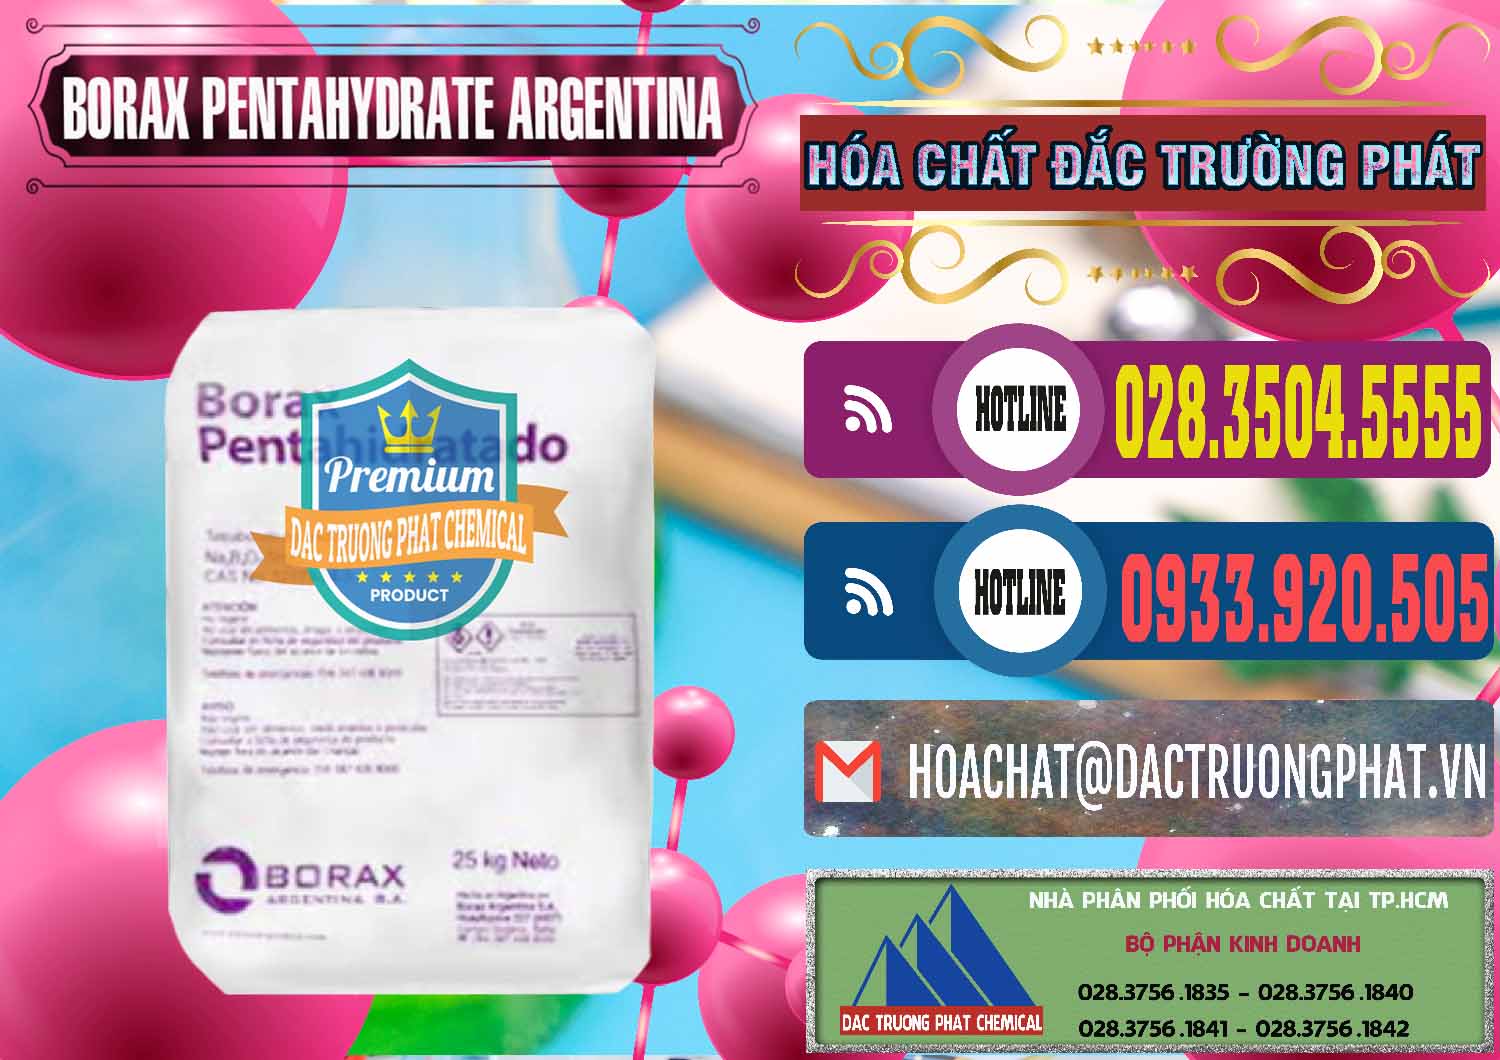 Đơn vị chuyên bán _ phân phối Borax Pentahydrate Argentina - 0447 - Nơi chuyên cung cấp _ kinh doanh hóa chất tại TP.HCM - muabanhoachat.com.vn